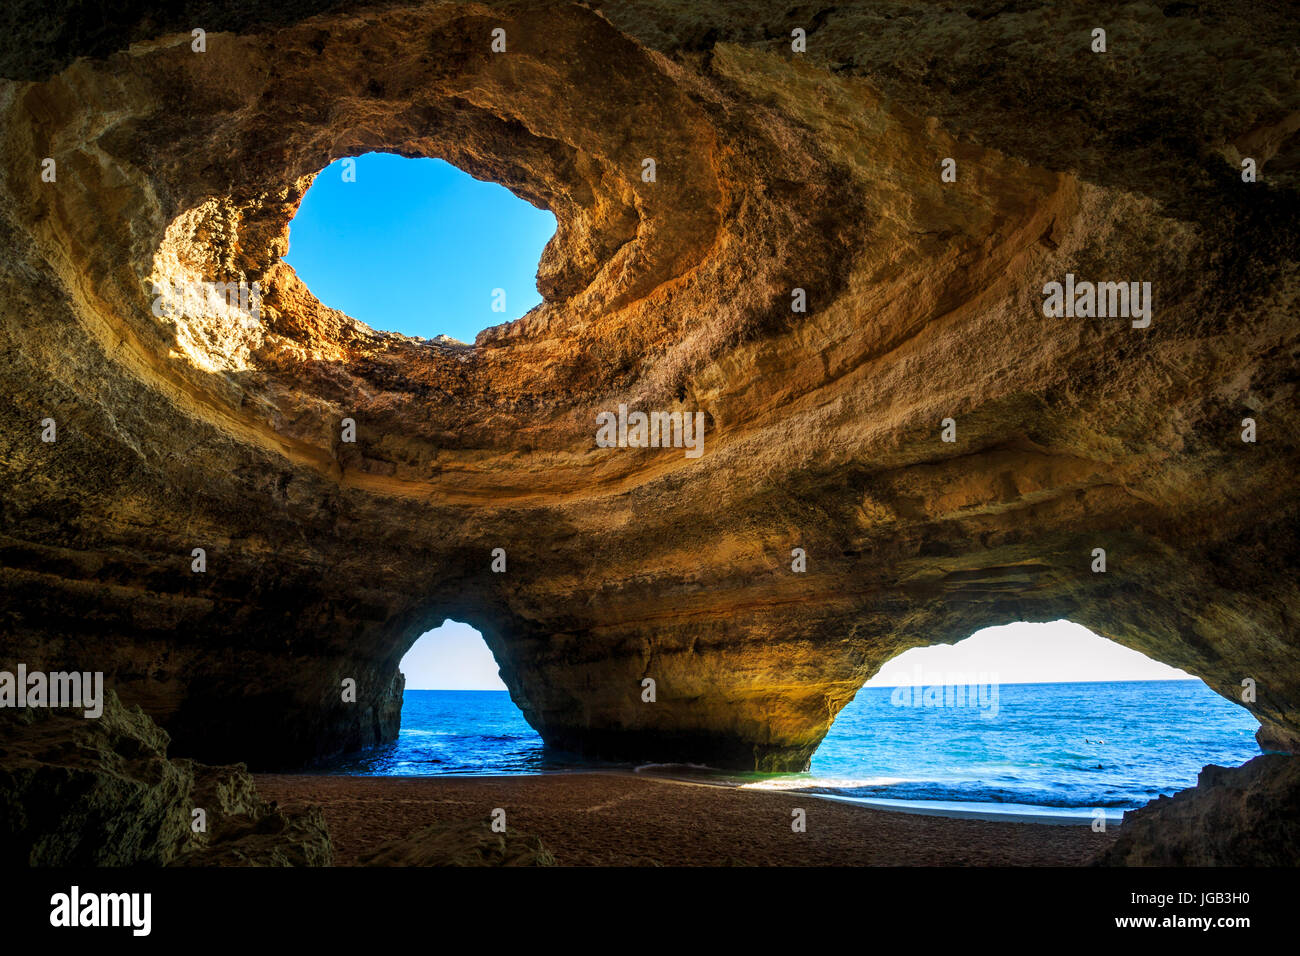 Beautiful natural cave in Benagil, Algarve, Portugal Stock Photo